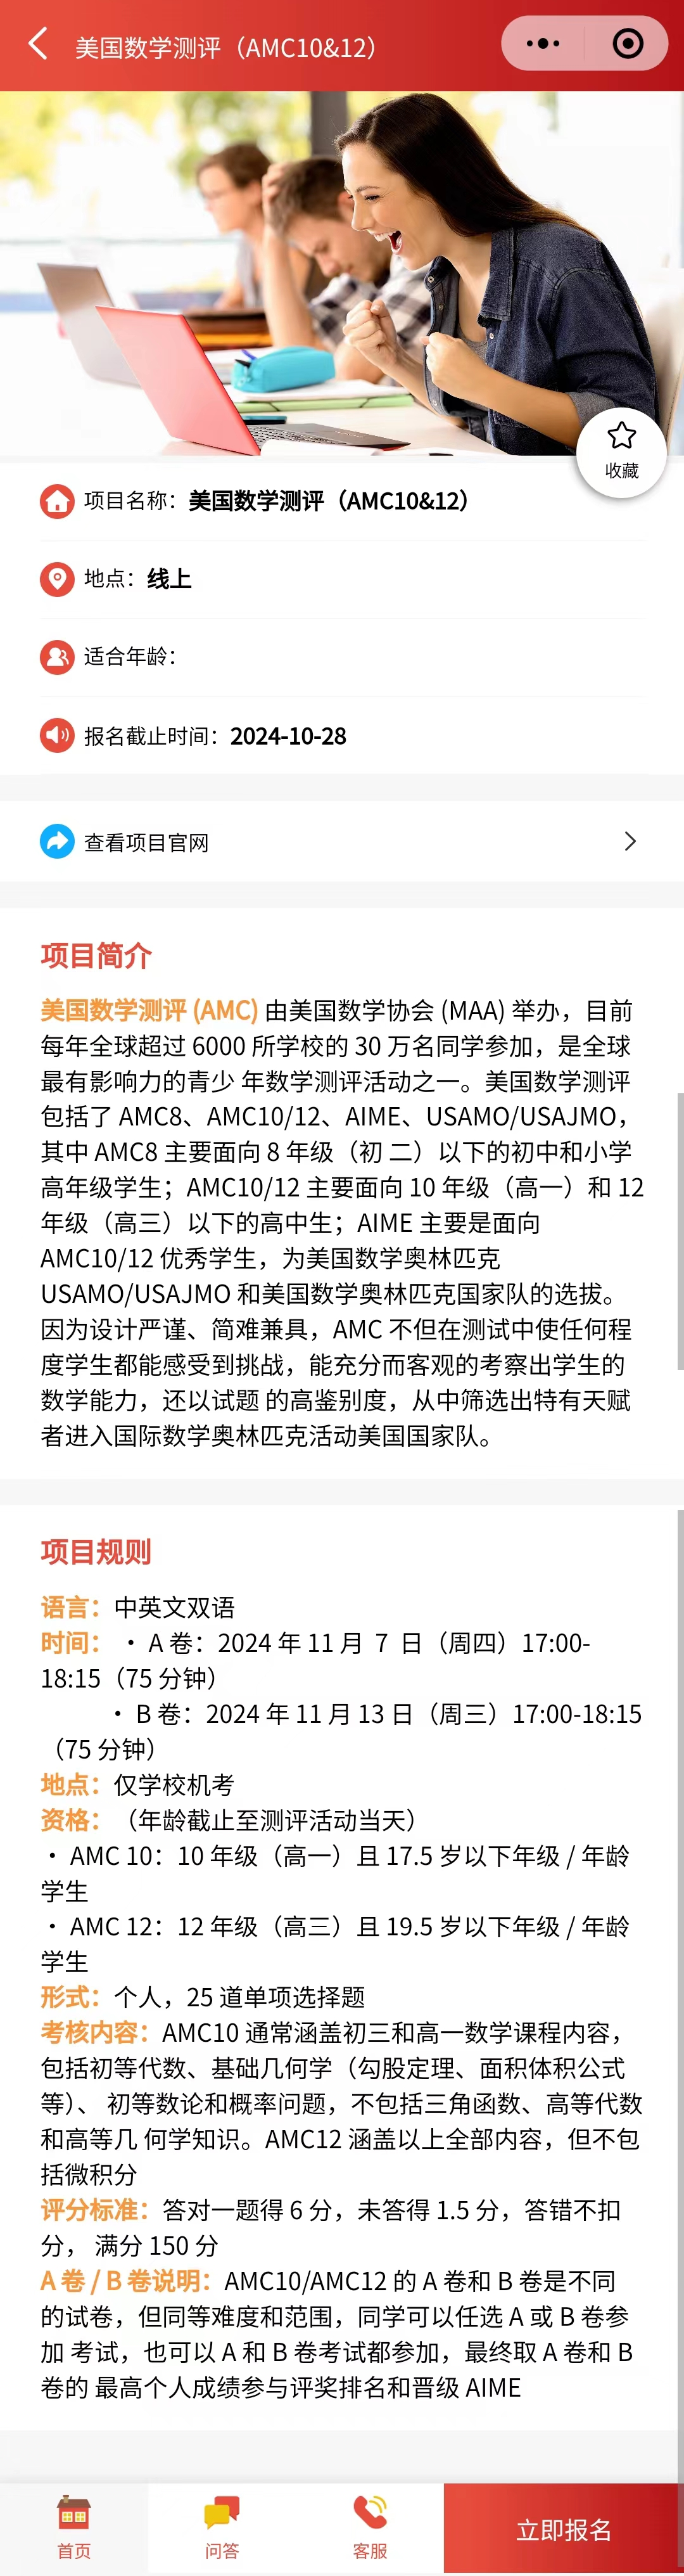 2024-2025年AMC数学竞赛中国区考试时间公布！超详细AMC报名流程指南~